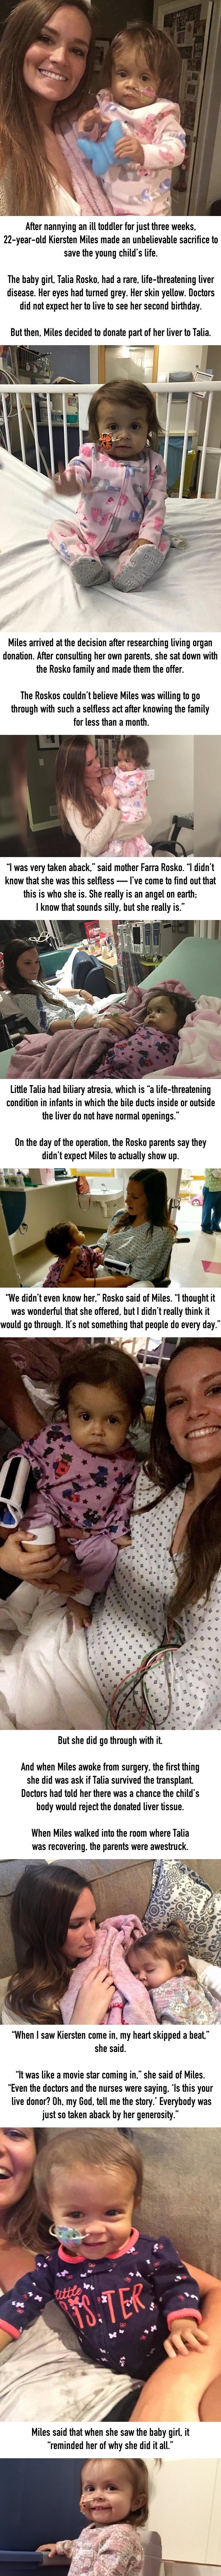 A nanny made an incredible sacrifice to save a sick toddler